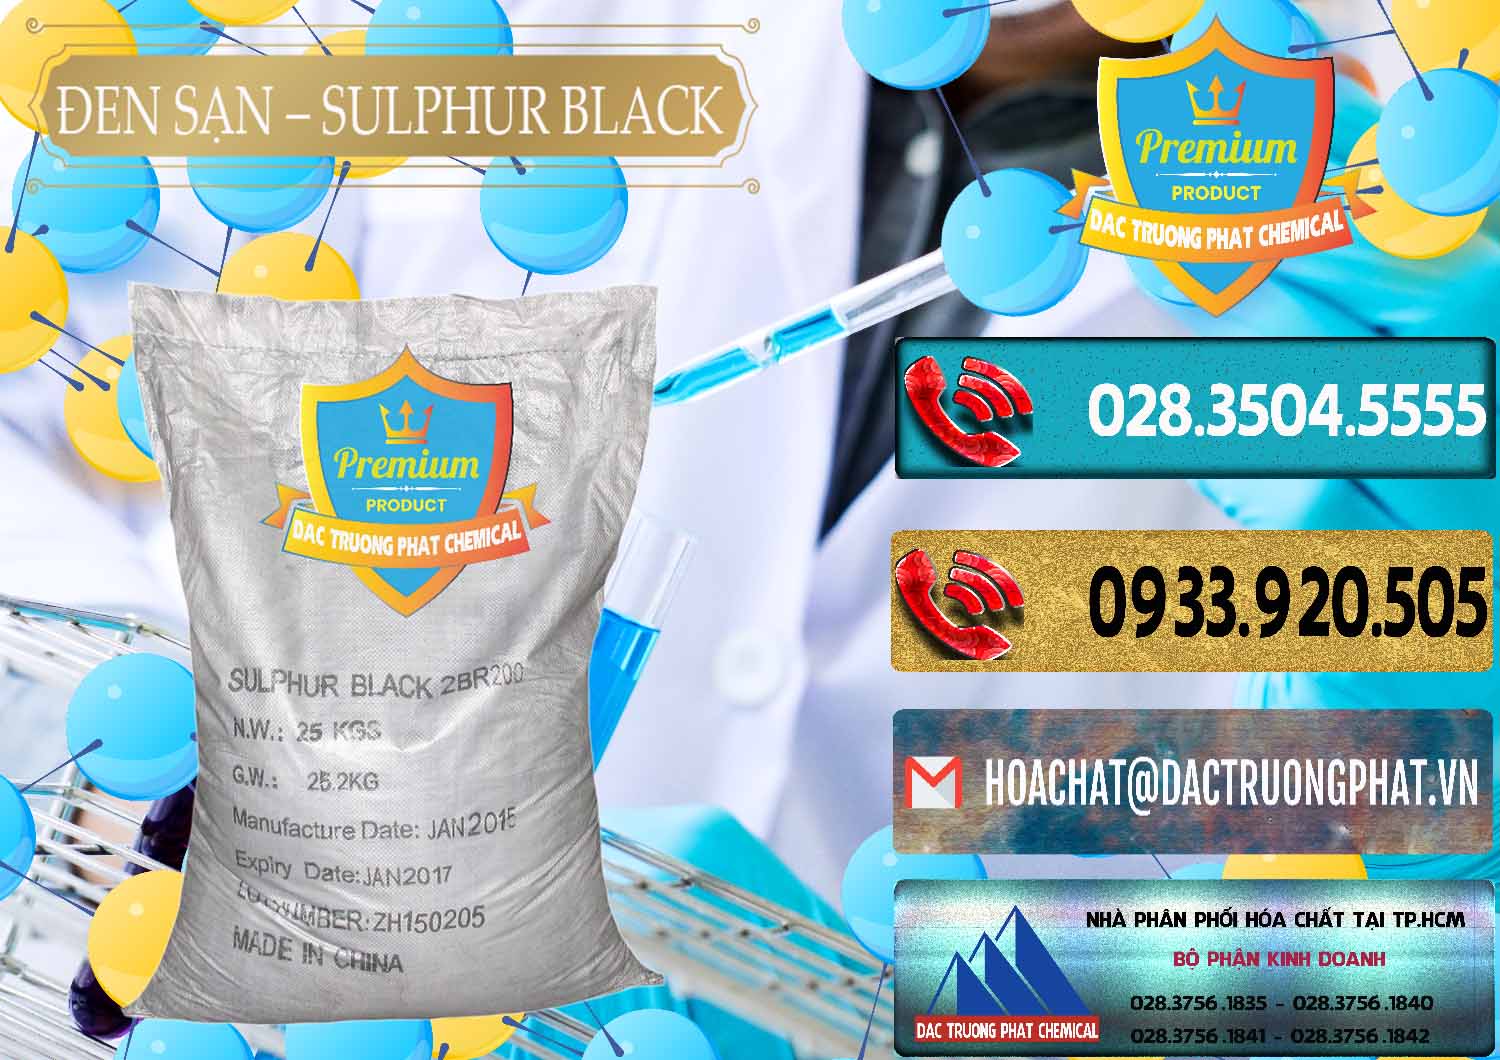 Cty nhập khẩu và bán Đen Sạn – Sulphur Black Trung Quốc China - 0062 - Nhà phân phối ( cung cấp ) hóa chất tại TP.HCM - hoachatdetnhuom.com